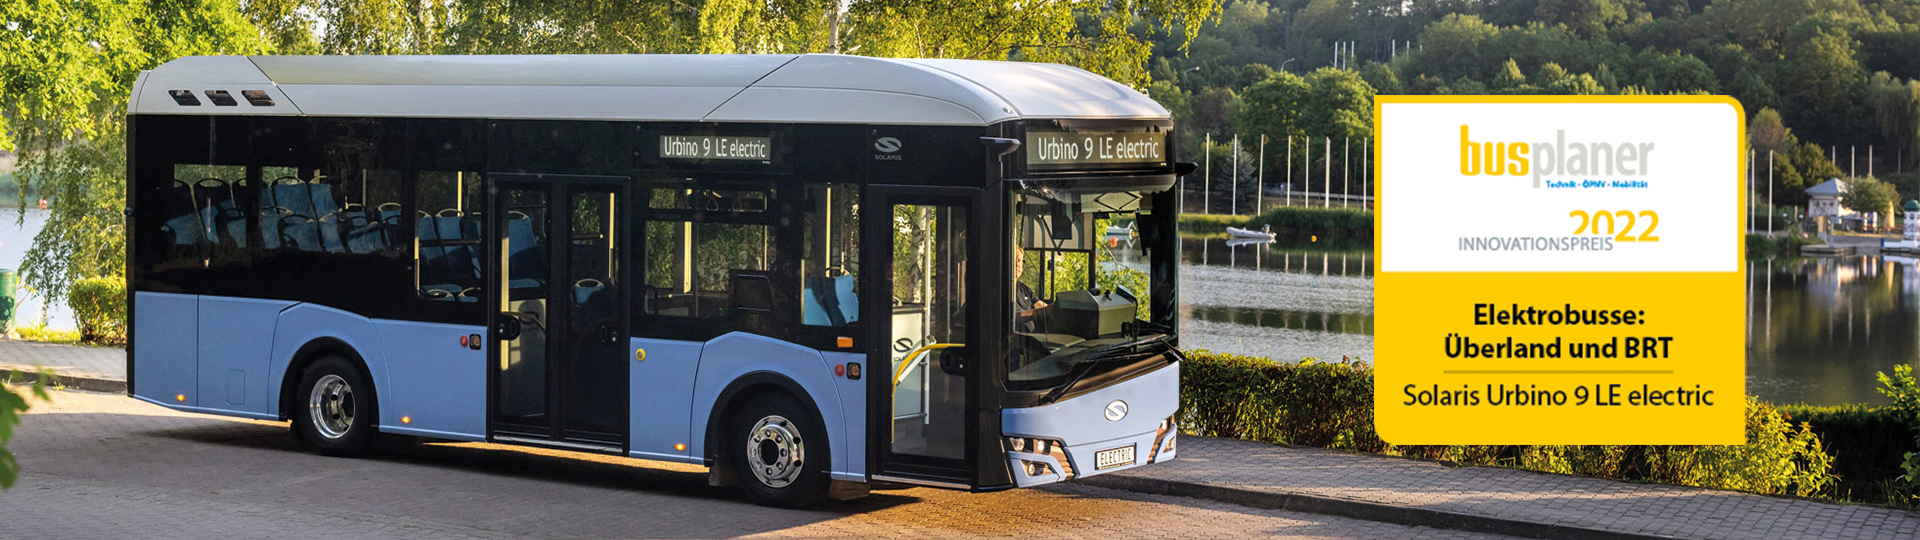 Solaris Urbino 9 LE electric gewinnt den prestigeträchtigen busplaner Innovationspreis 2022!